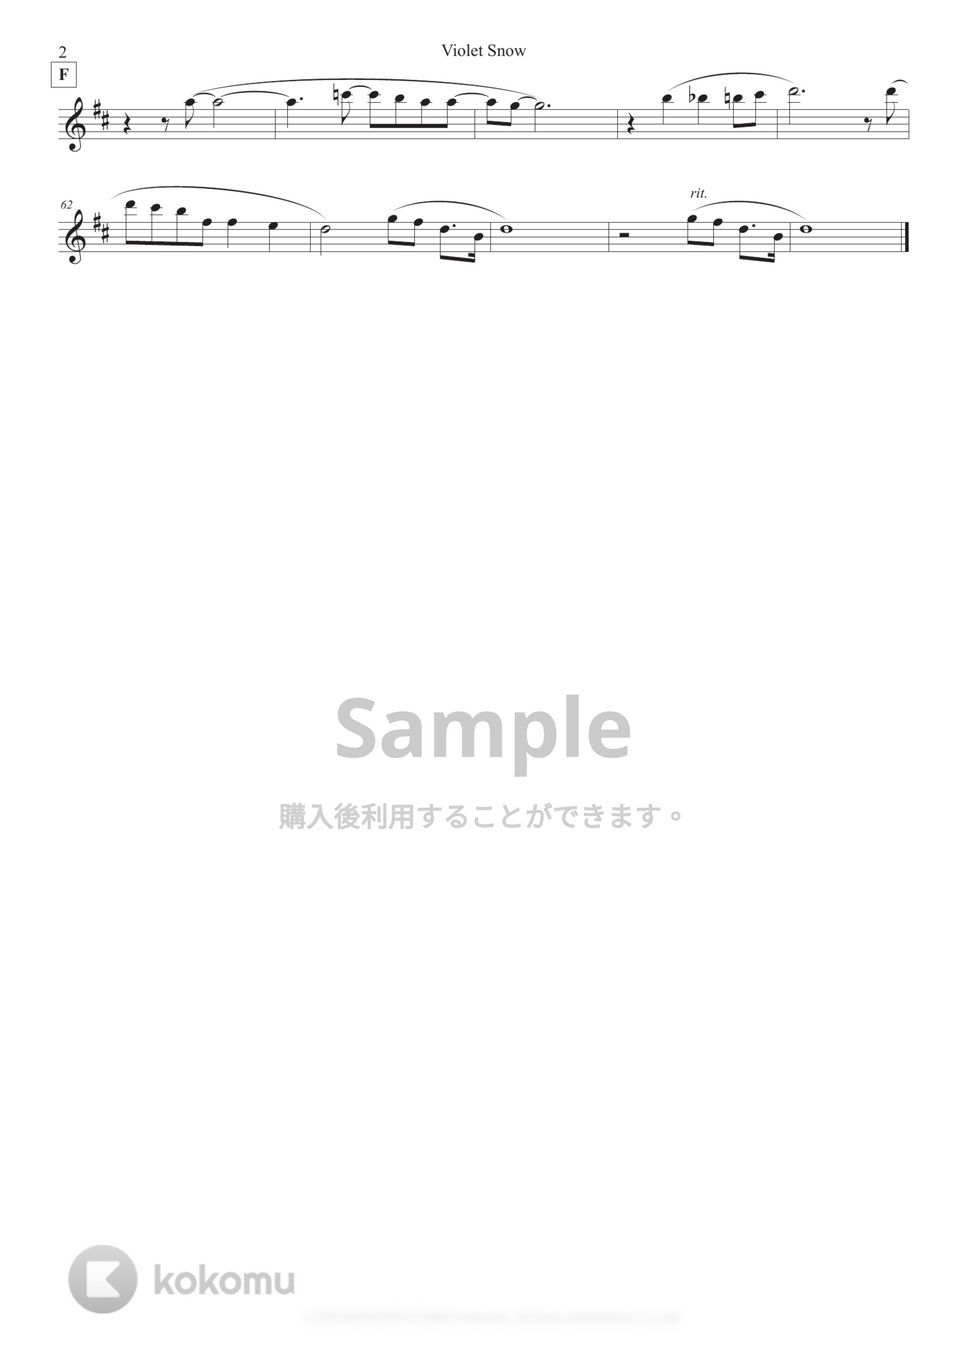 Violet Evergarden - Violet Snow (in C/中級) by Sumika